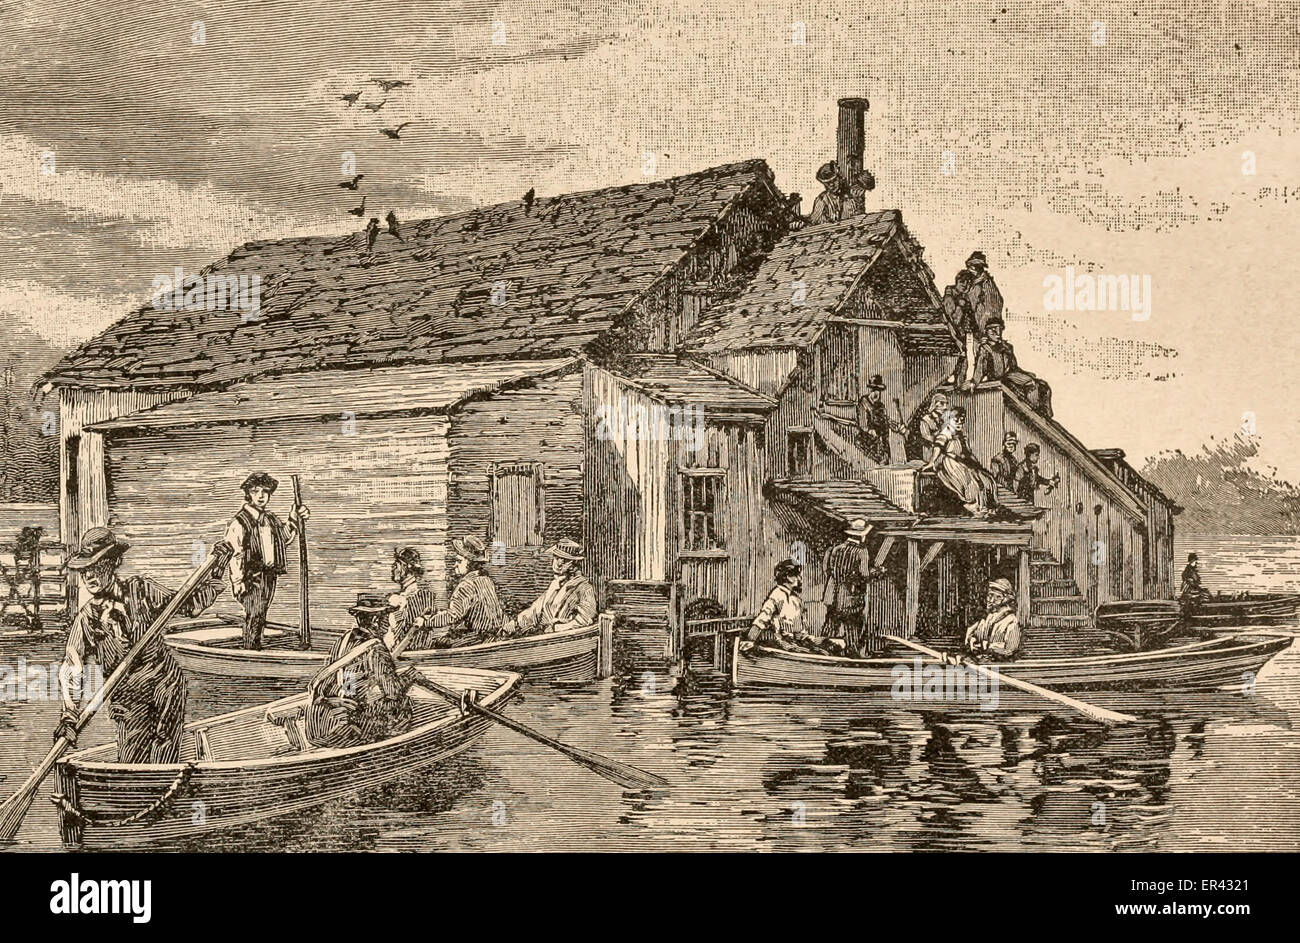 Il salvataggio di persone in navigazione distretti - New Orleans flood, 1882 basso Mississippi River Valley Foto Stock